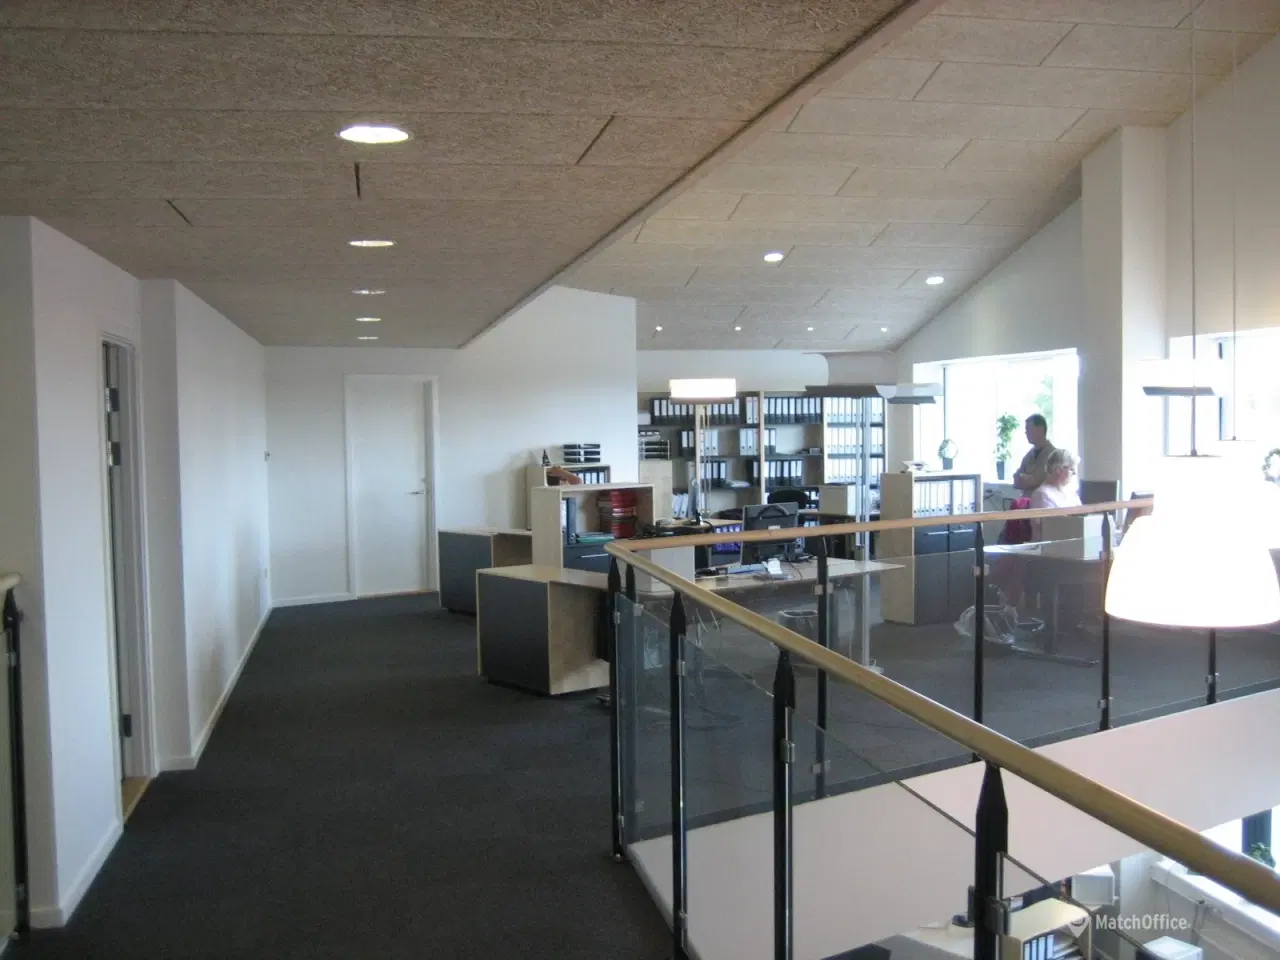 Billede 18 - Nyrenoverede kontorlokaler og logistik-/produktionshaller med god loftshøjde